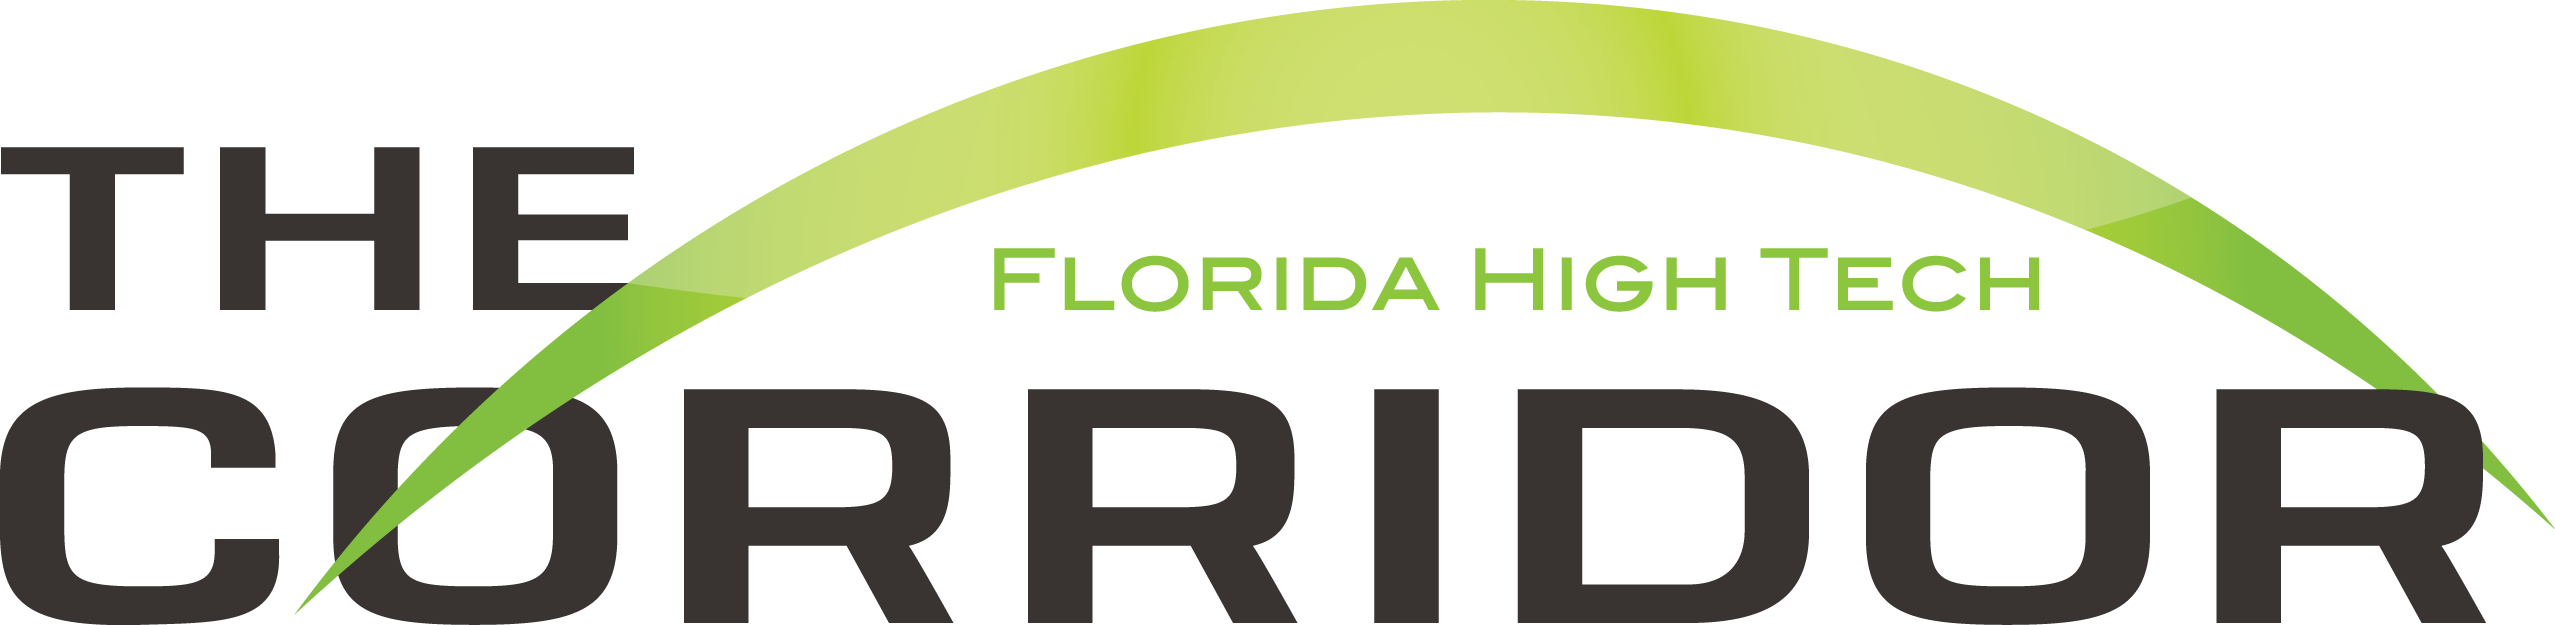 Florida High Tech Corridor Logo PNG